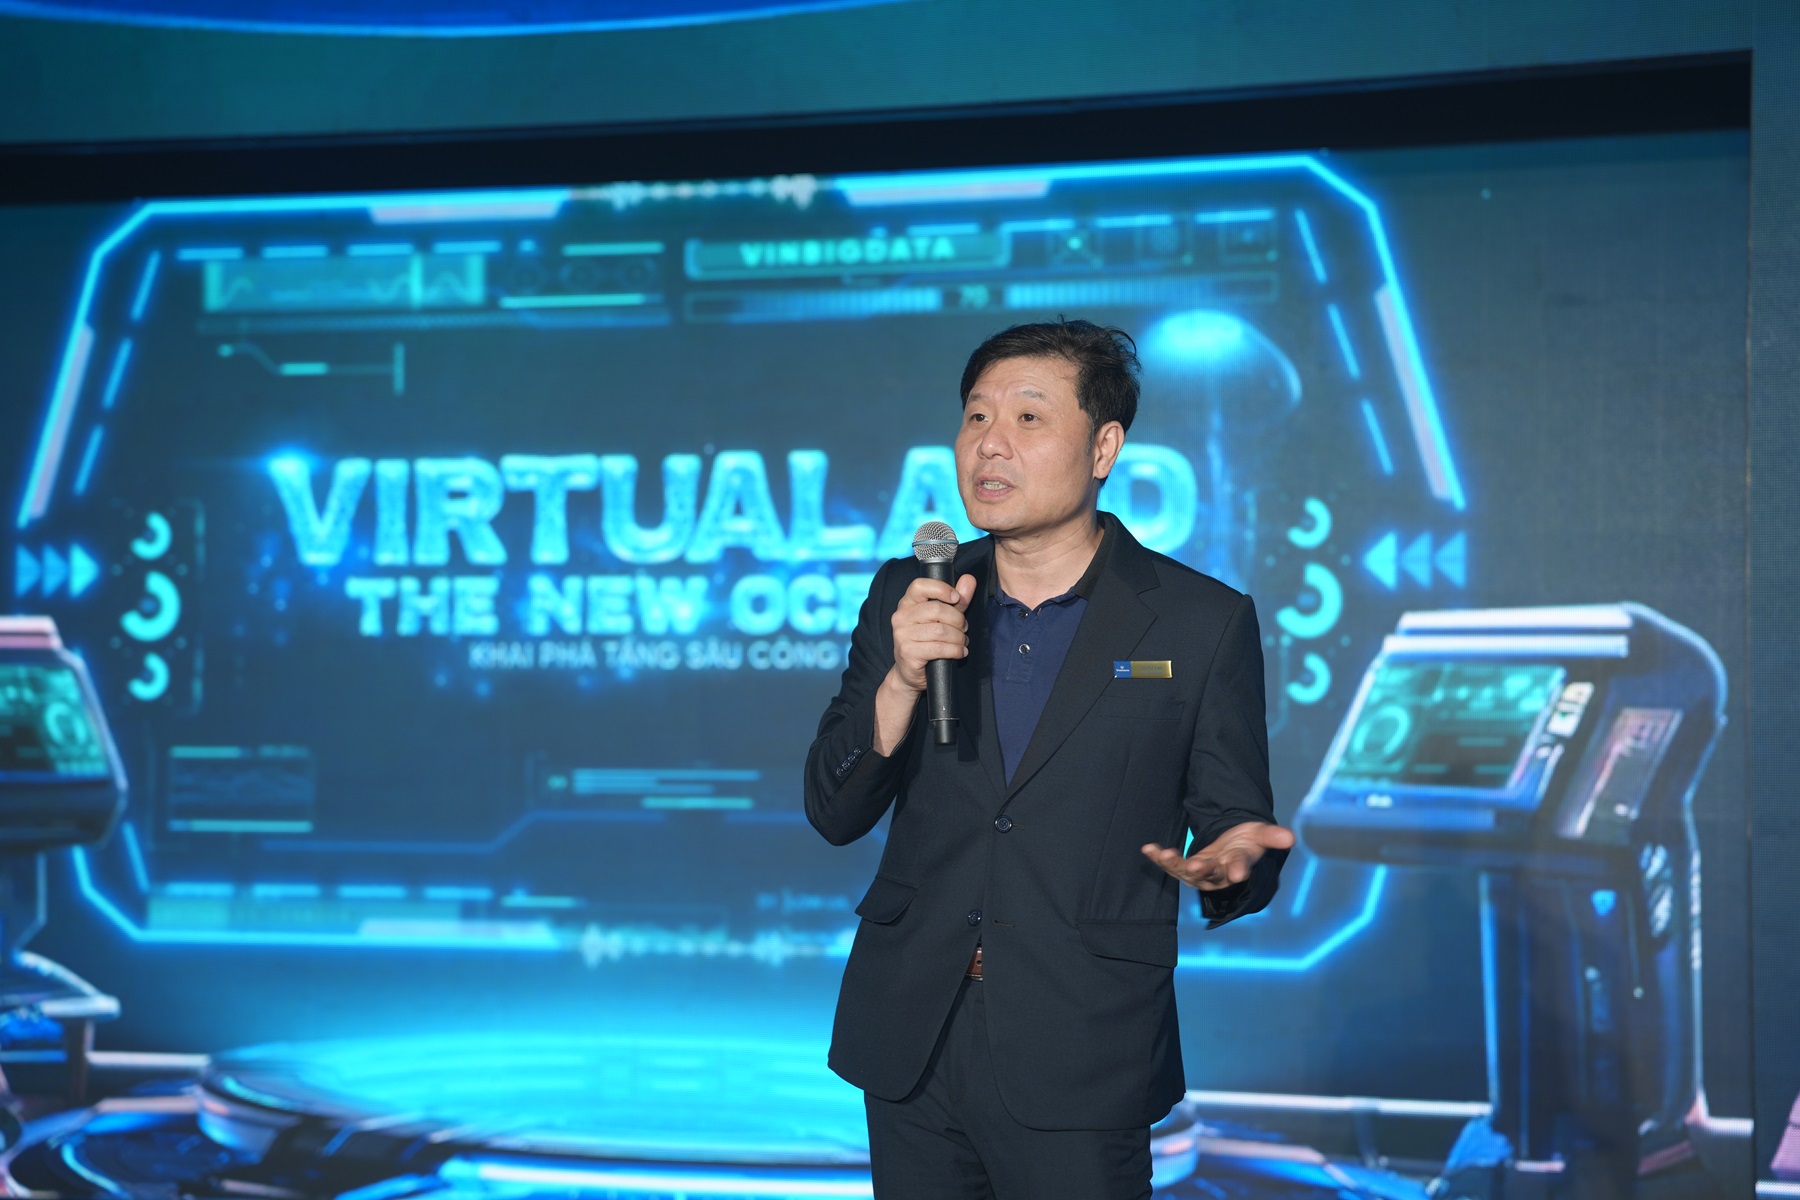 GS. Vũ Hà Văn (Giám đốc Khoa học VinBigdata) khẳng định ViGPT sẽ đánh dấu cột mốc mới của Việt Nam trong việc làm chủ AI tạo sinh, tự chủ khai thác dữ liệu và bảo vệ an ninh thông tin.